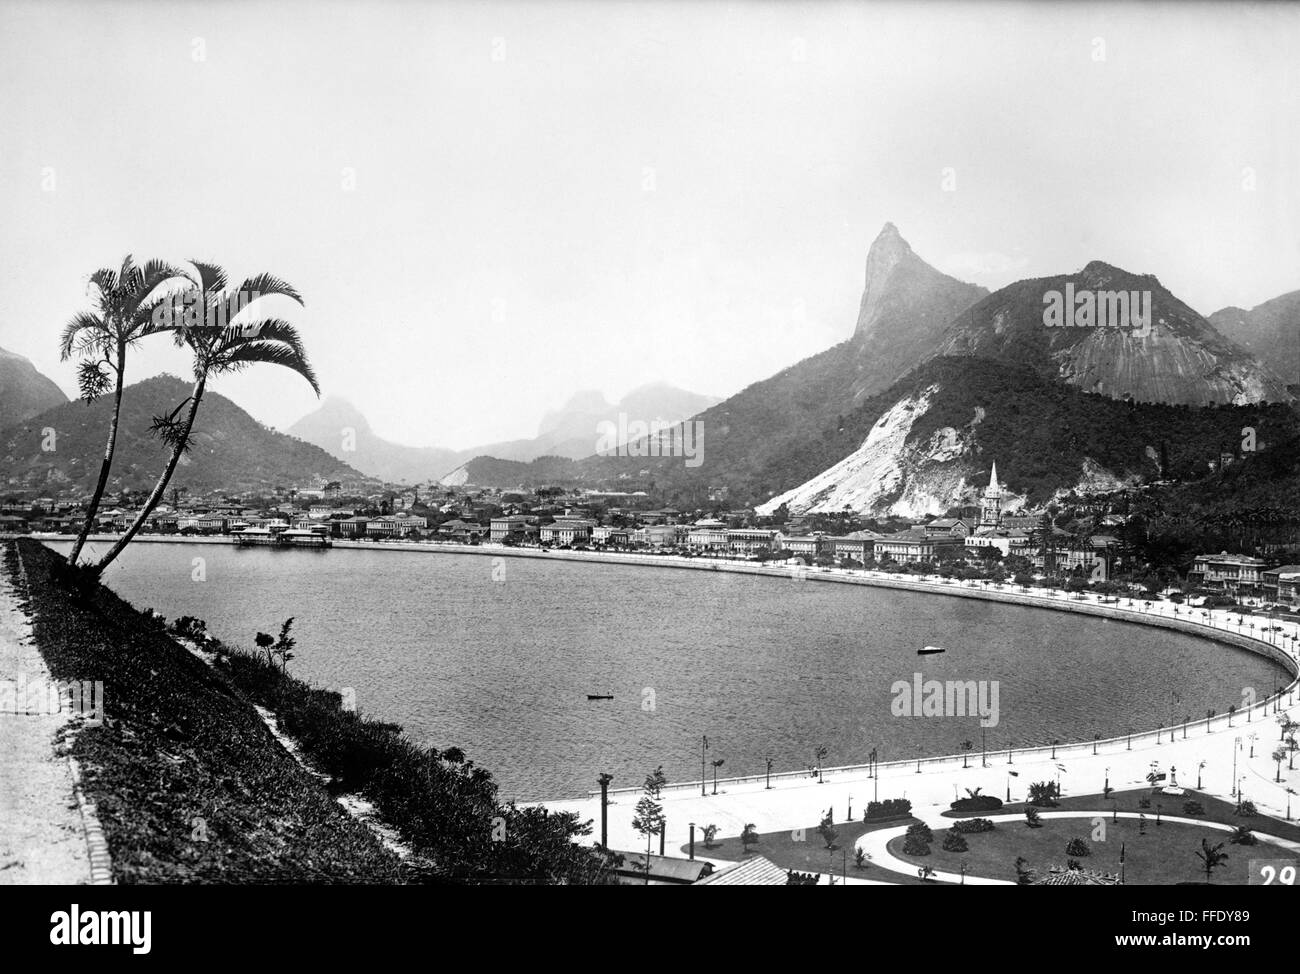 BRAZIL: RIO DE JANEIRO./nInlet of Botafogo in Rio de Janeiro, Brazil. Photograph, early 20th century. Stock Photo